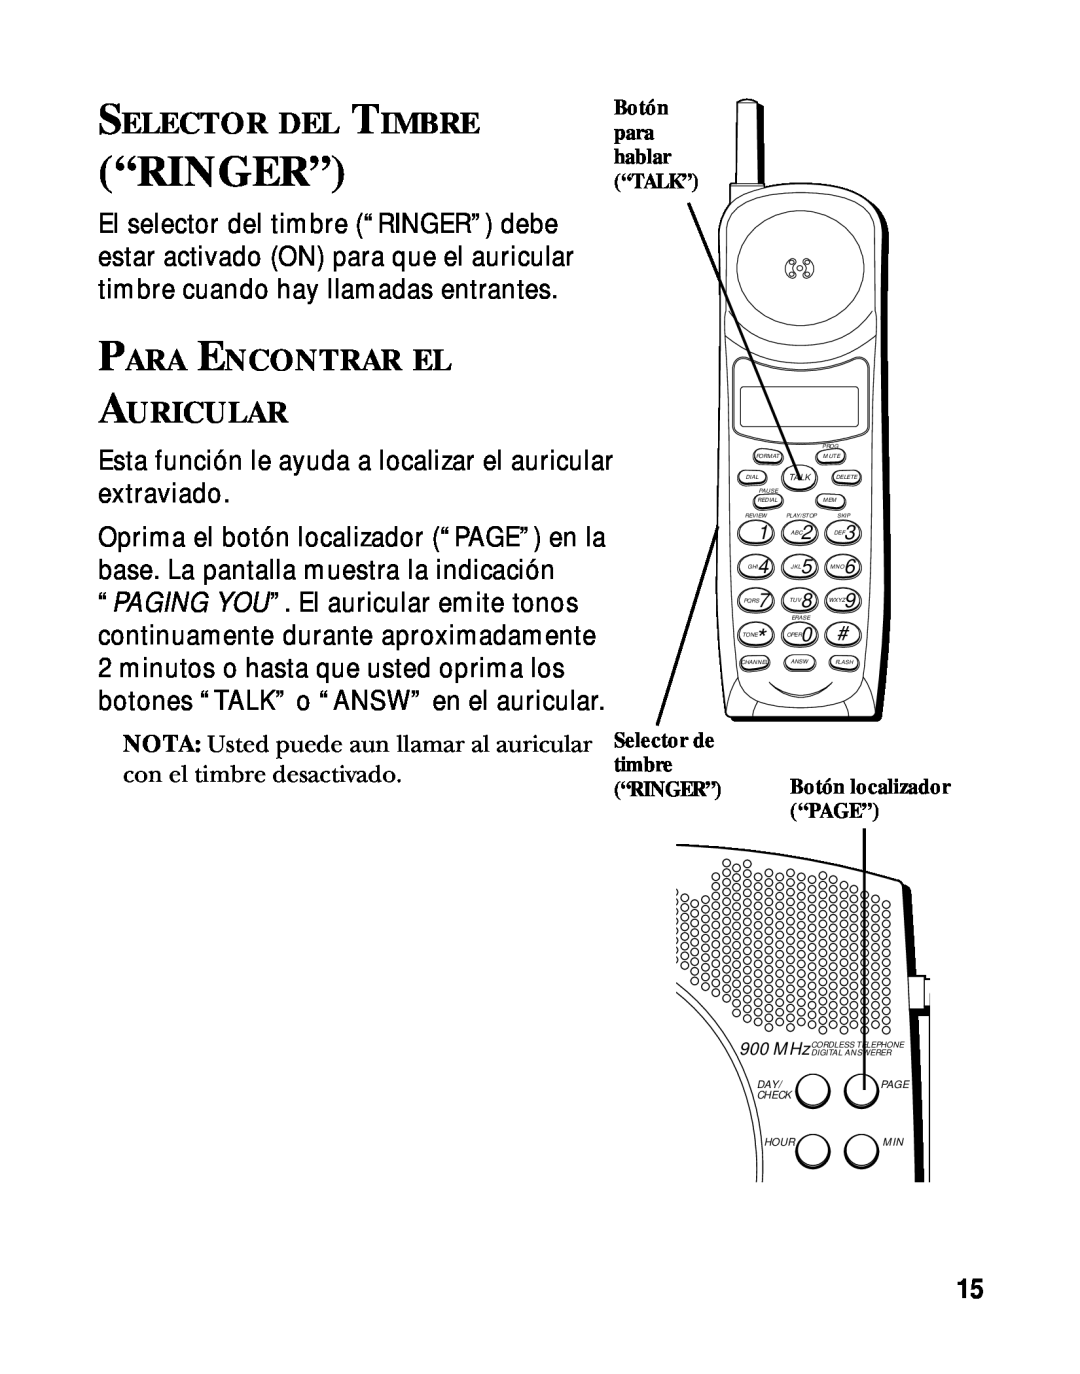 RCA 900 MHz manual “Ringer”, Selector Del Timbre, Para Encontrar El Auricular 